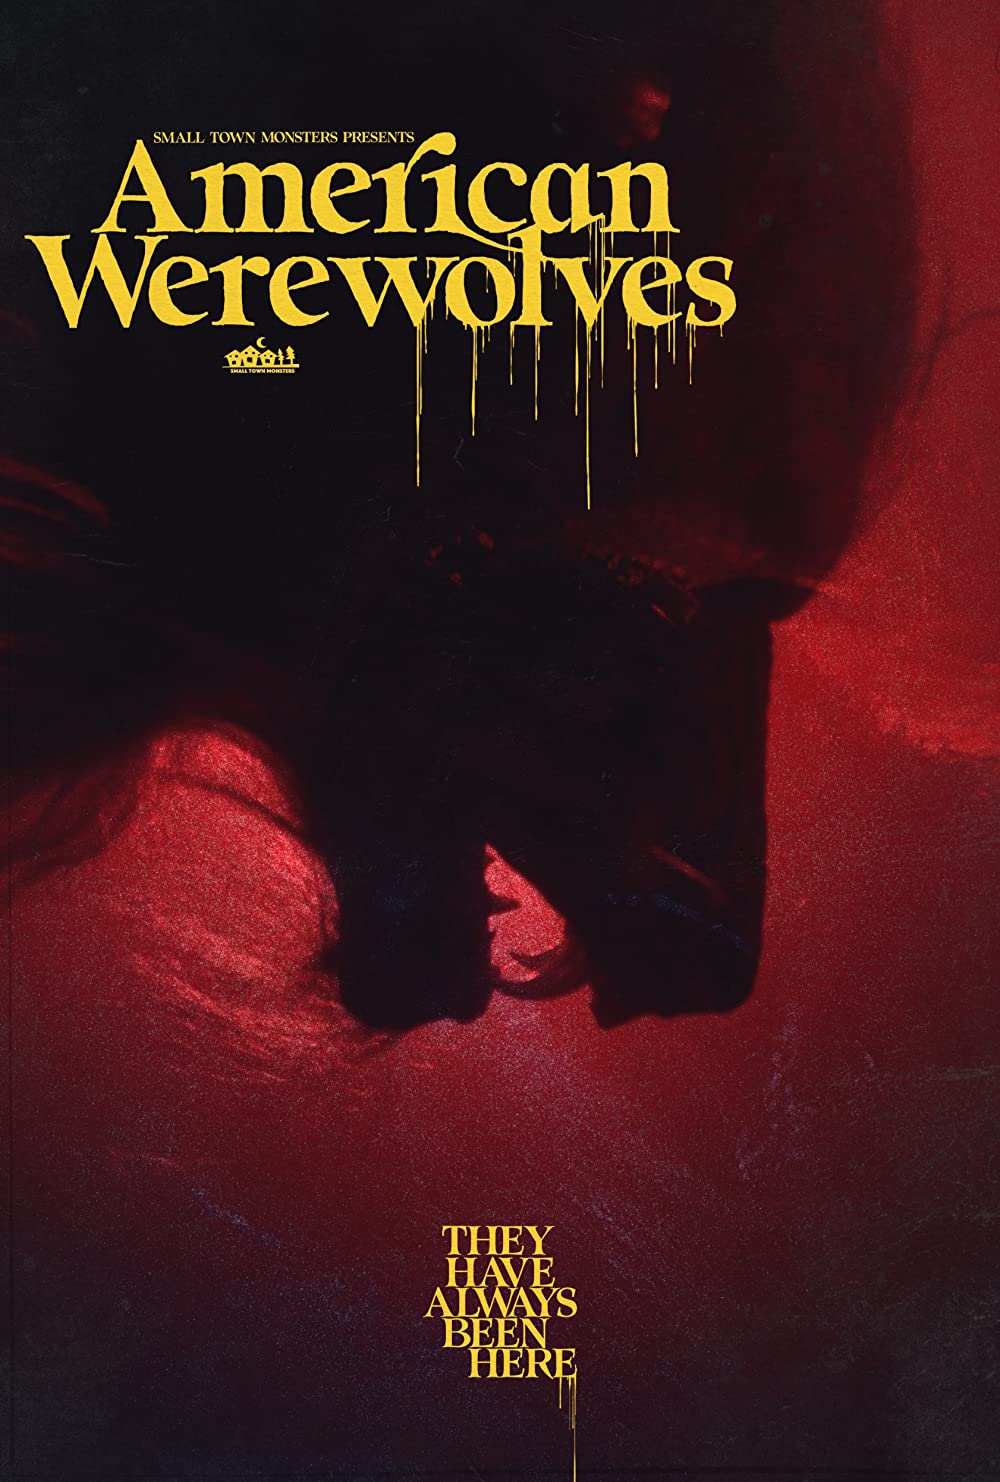 Filmbeschreibung zu American Werewolf (OV)